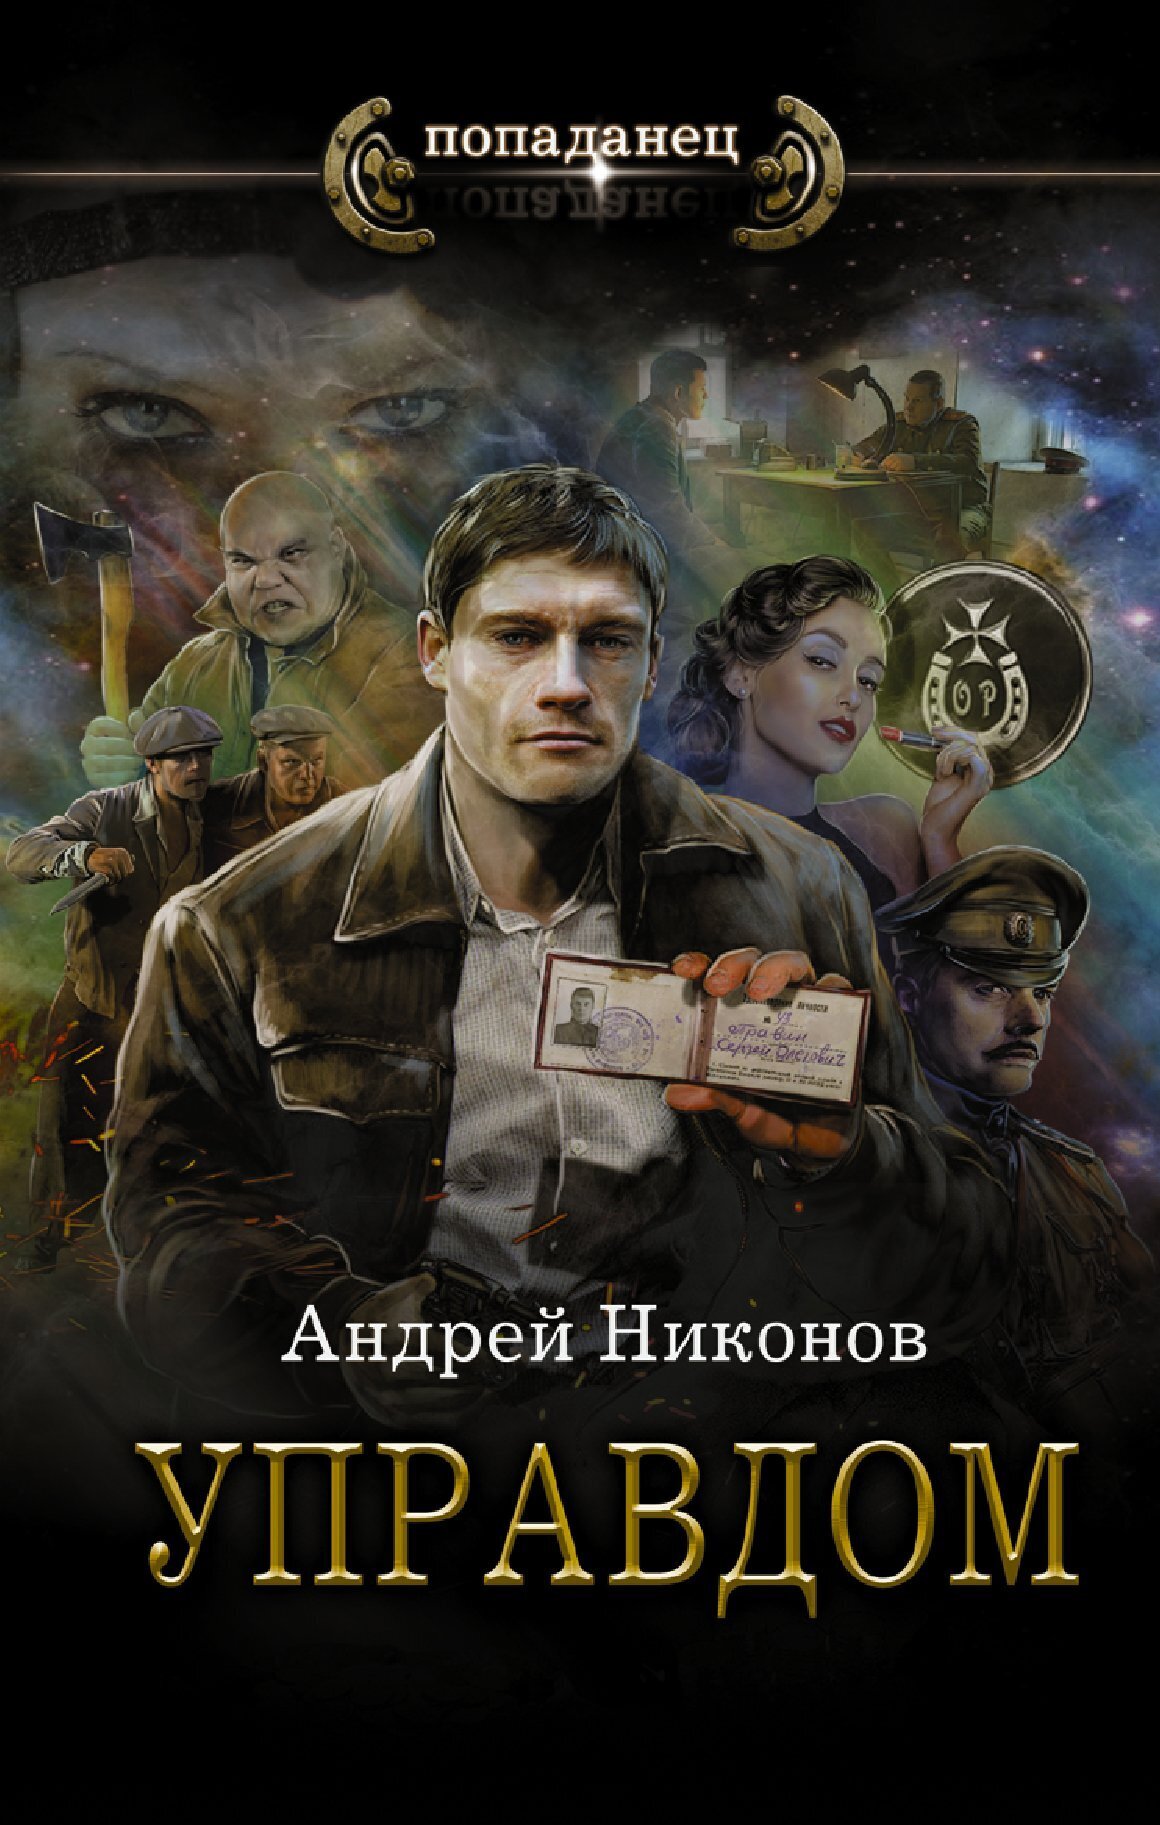 Андрей Никонов. Управдом. Книга 1